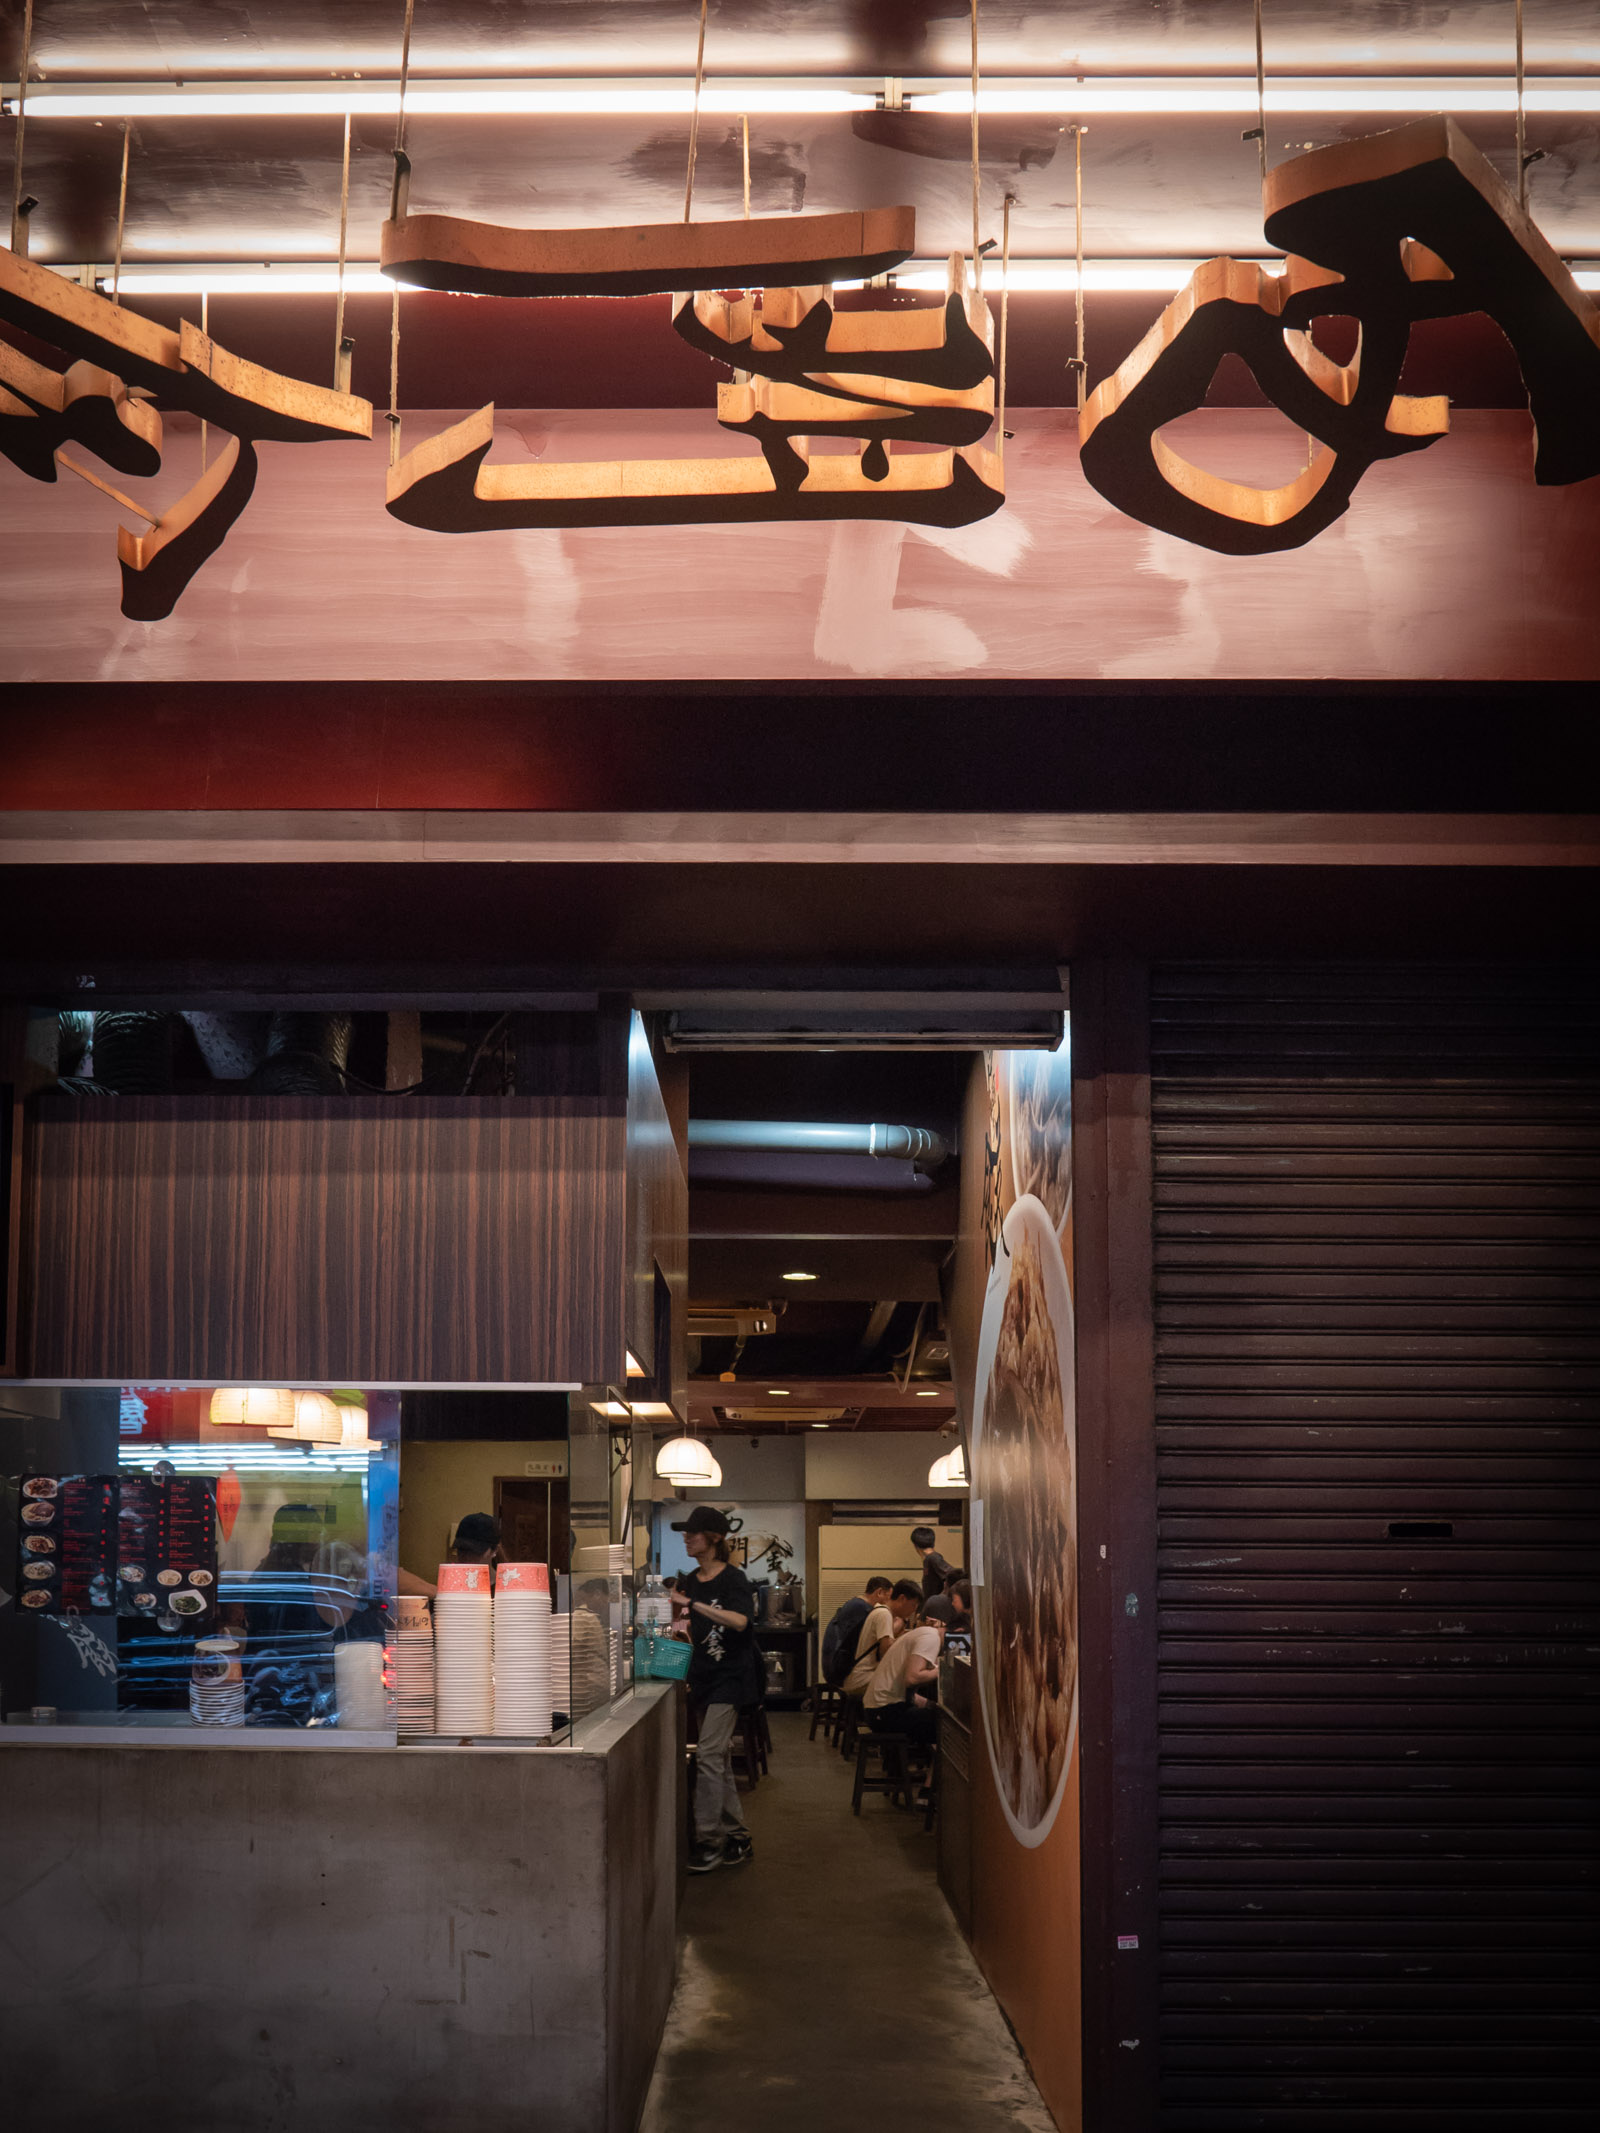 西門金鋒魯肉飯 西門総店の入口から眺める店内